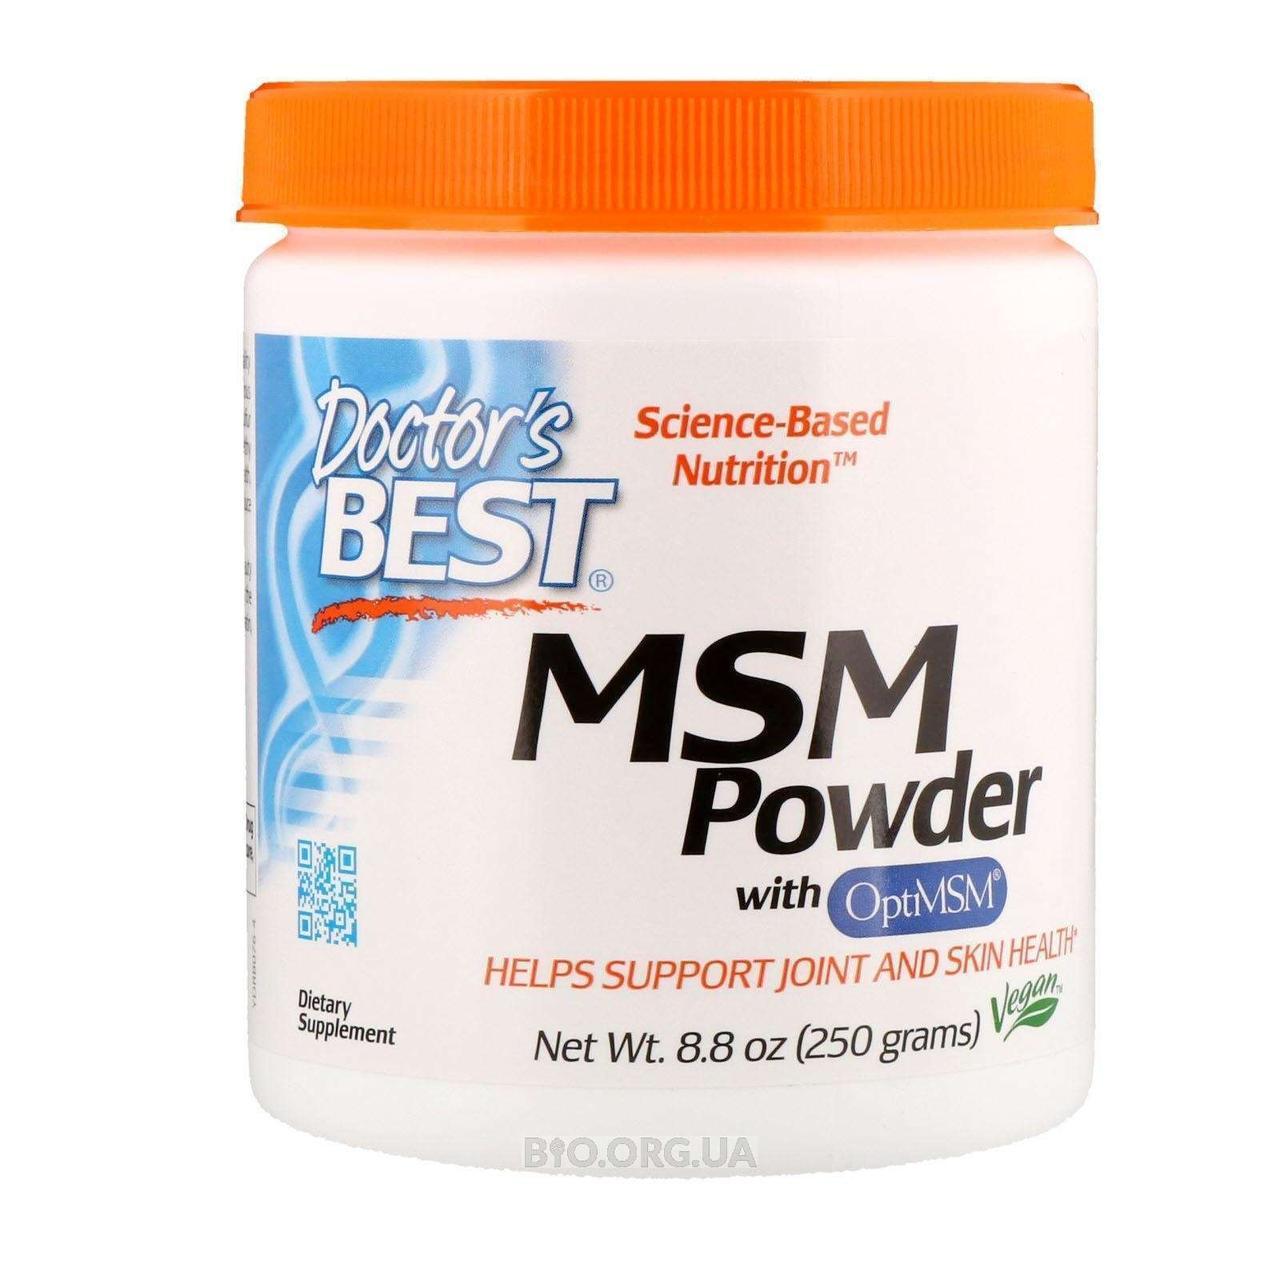 Препарат для відновлення суглобів і зв'язок Doctor's s BEST MSM Powder (250 г) Оригінал! (337543)